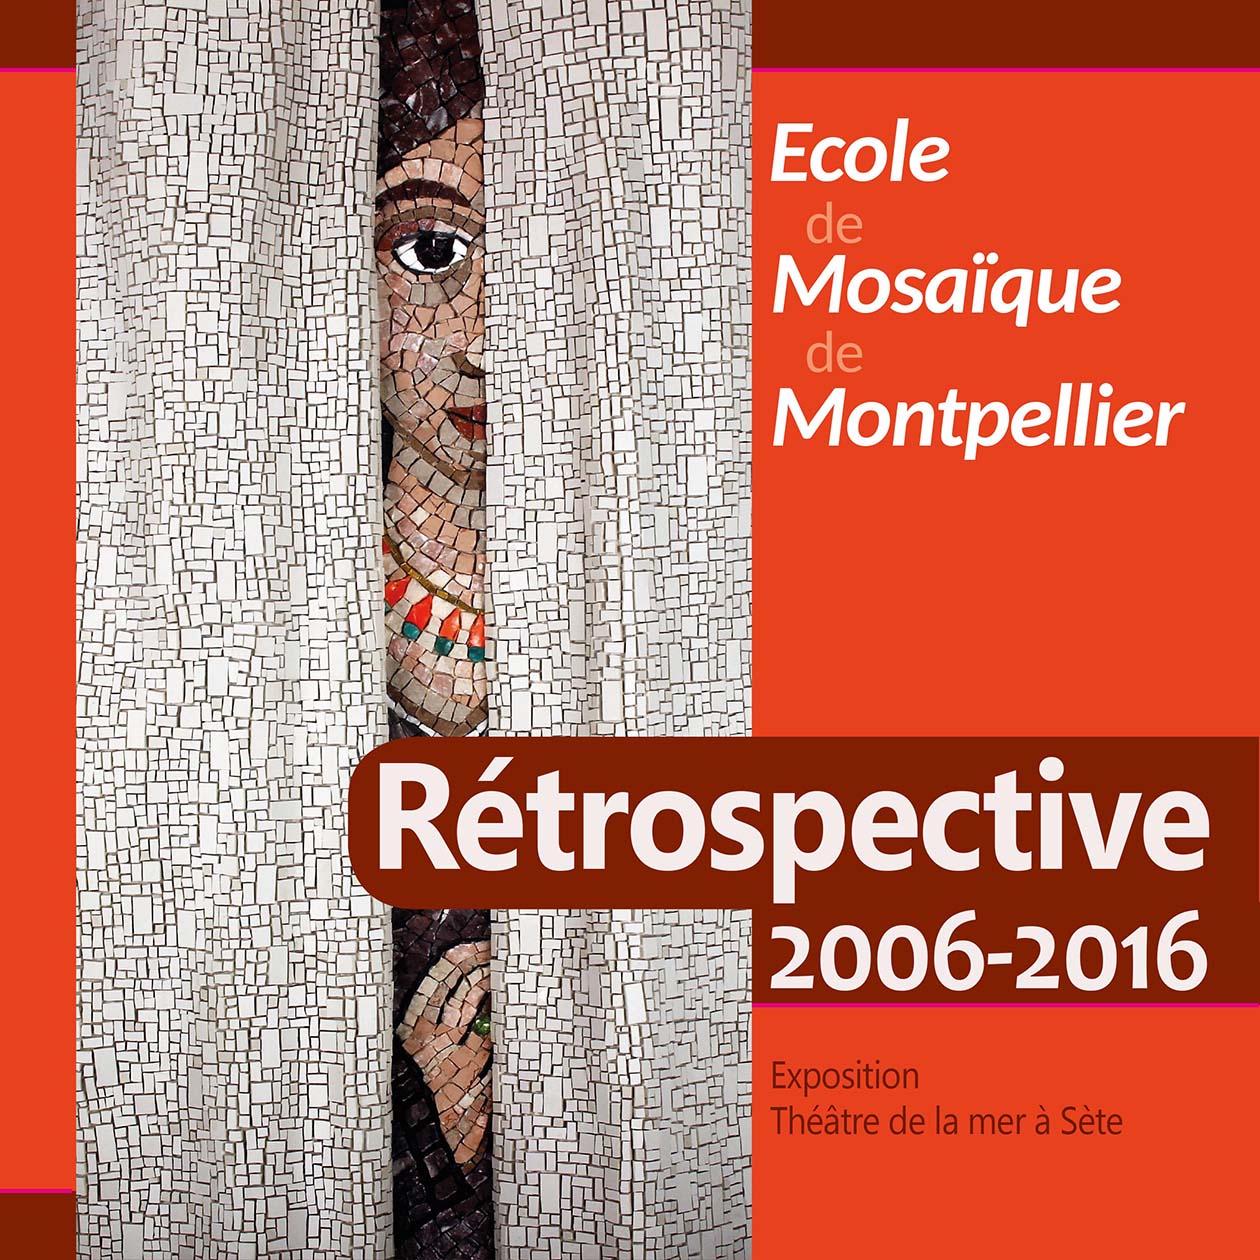 Catalogue de l'Expo de l'Ecole de Mosaque de Montpellier